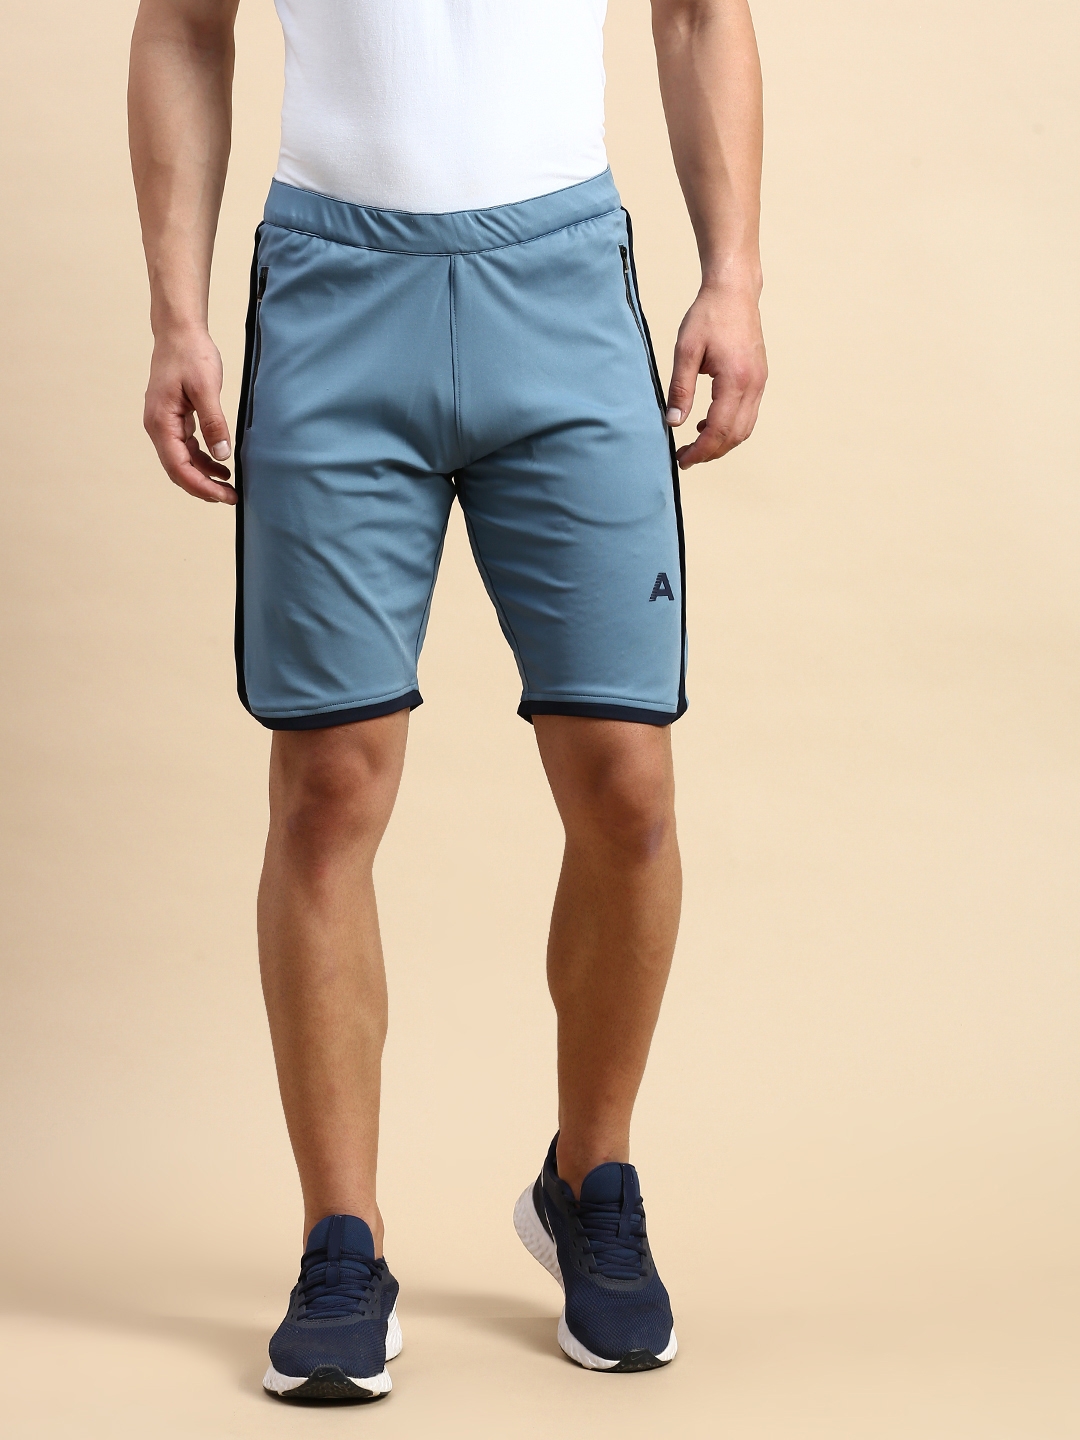 Showoff | SHOWOFF Men's Knee Length Solid Blue Mid-Rise Regular Shorts